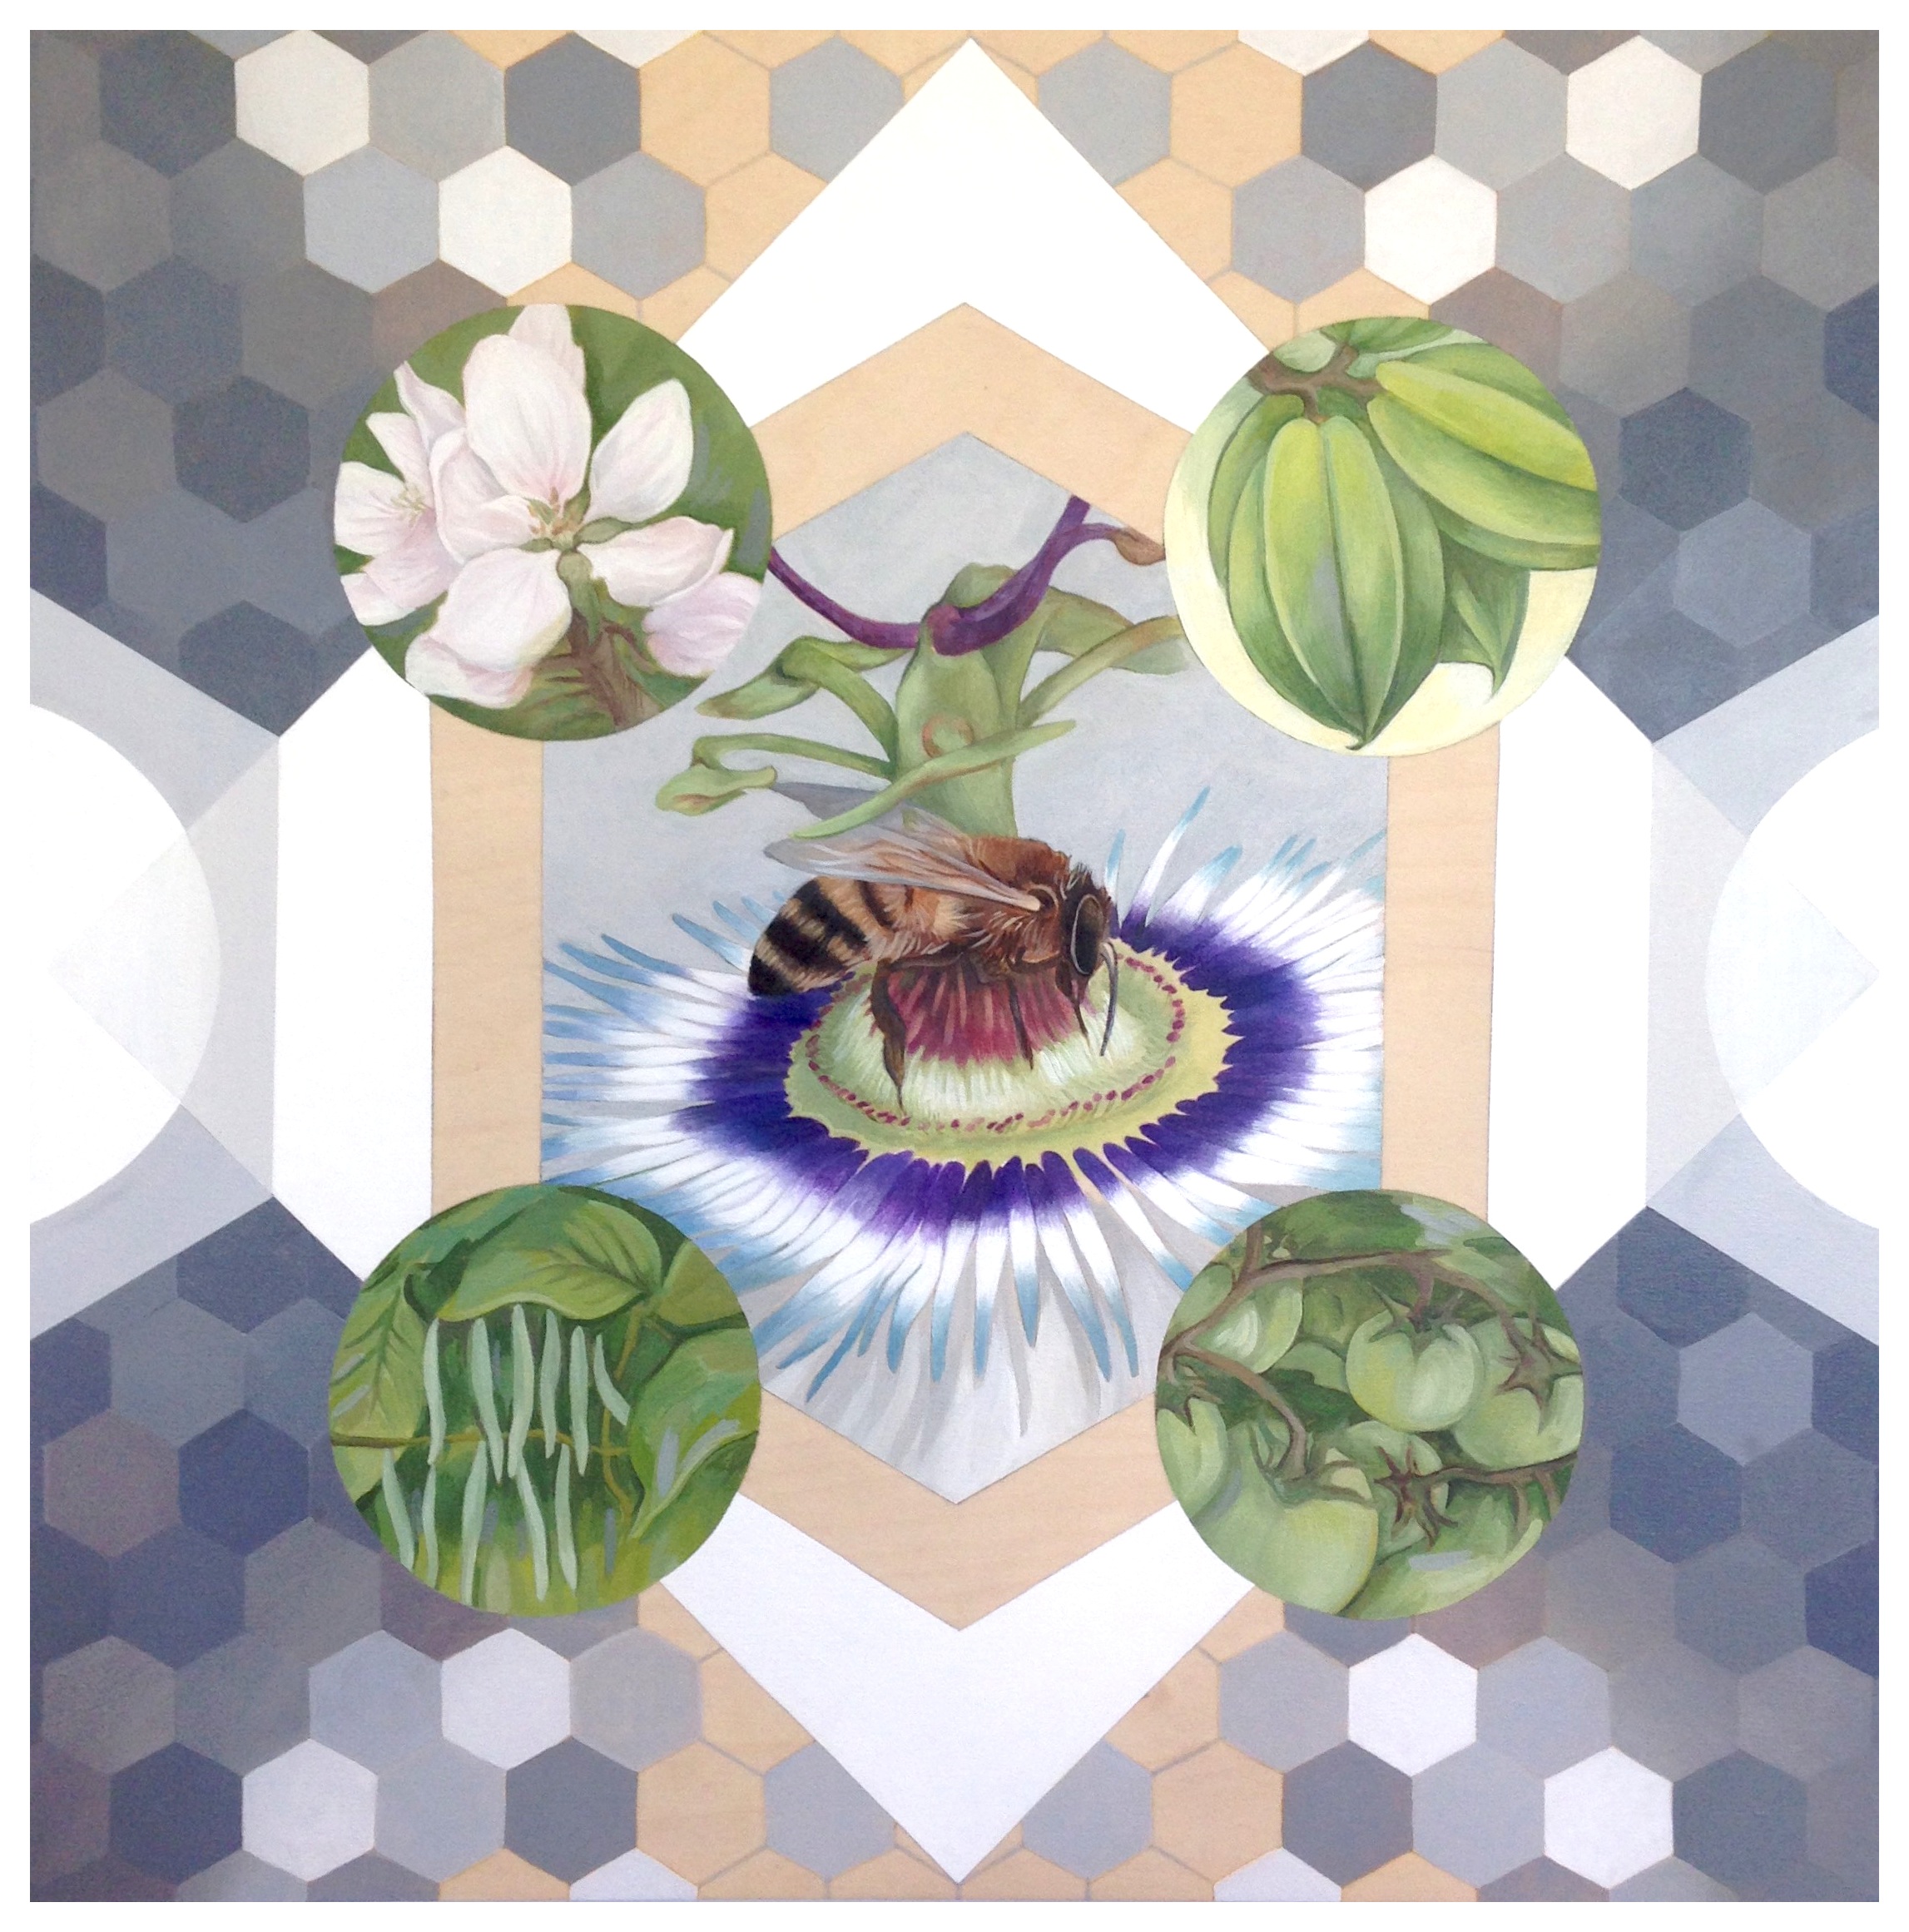 Pollinator, 20" x 20", Acrylic on Wood Panel